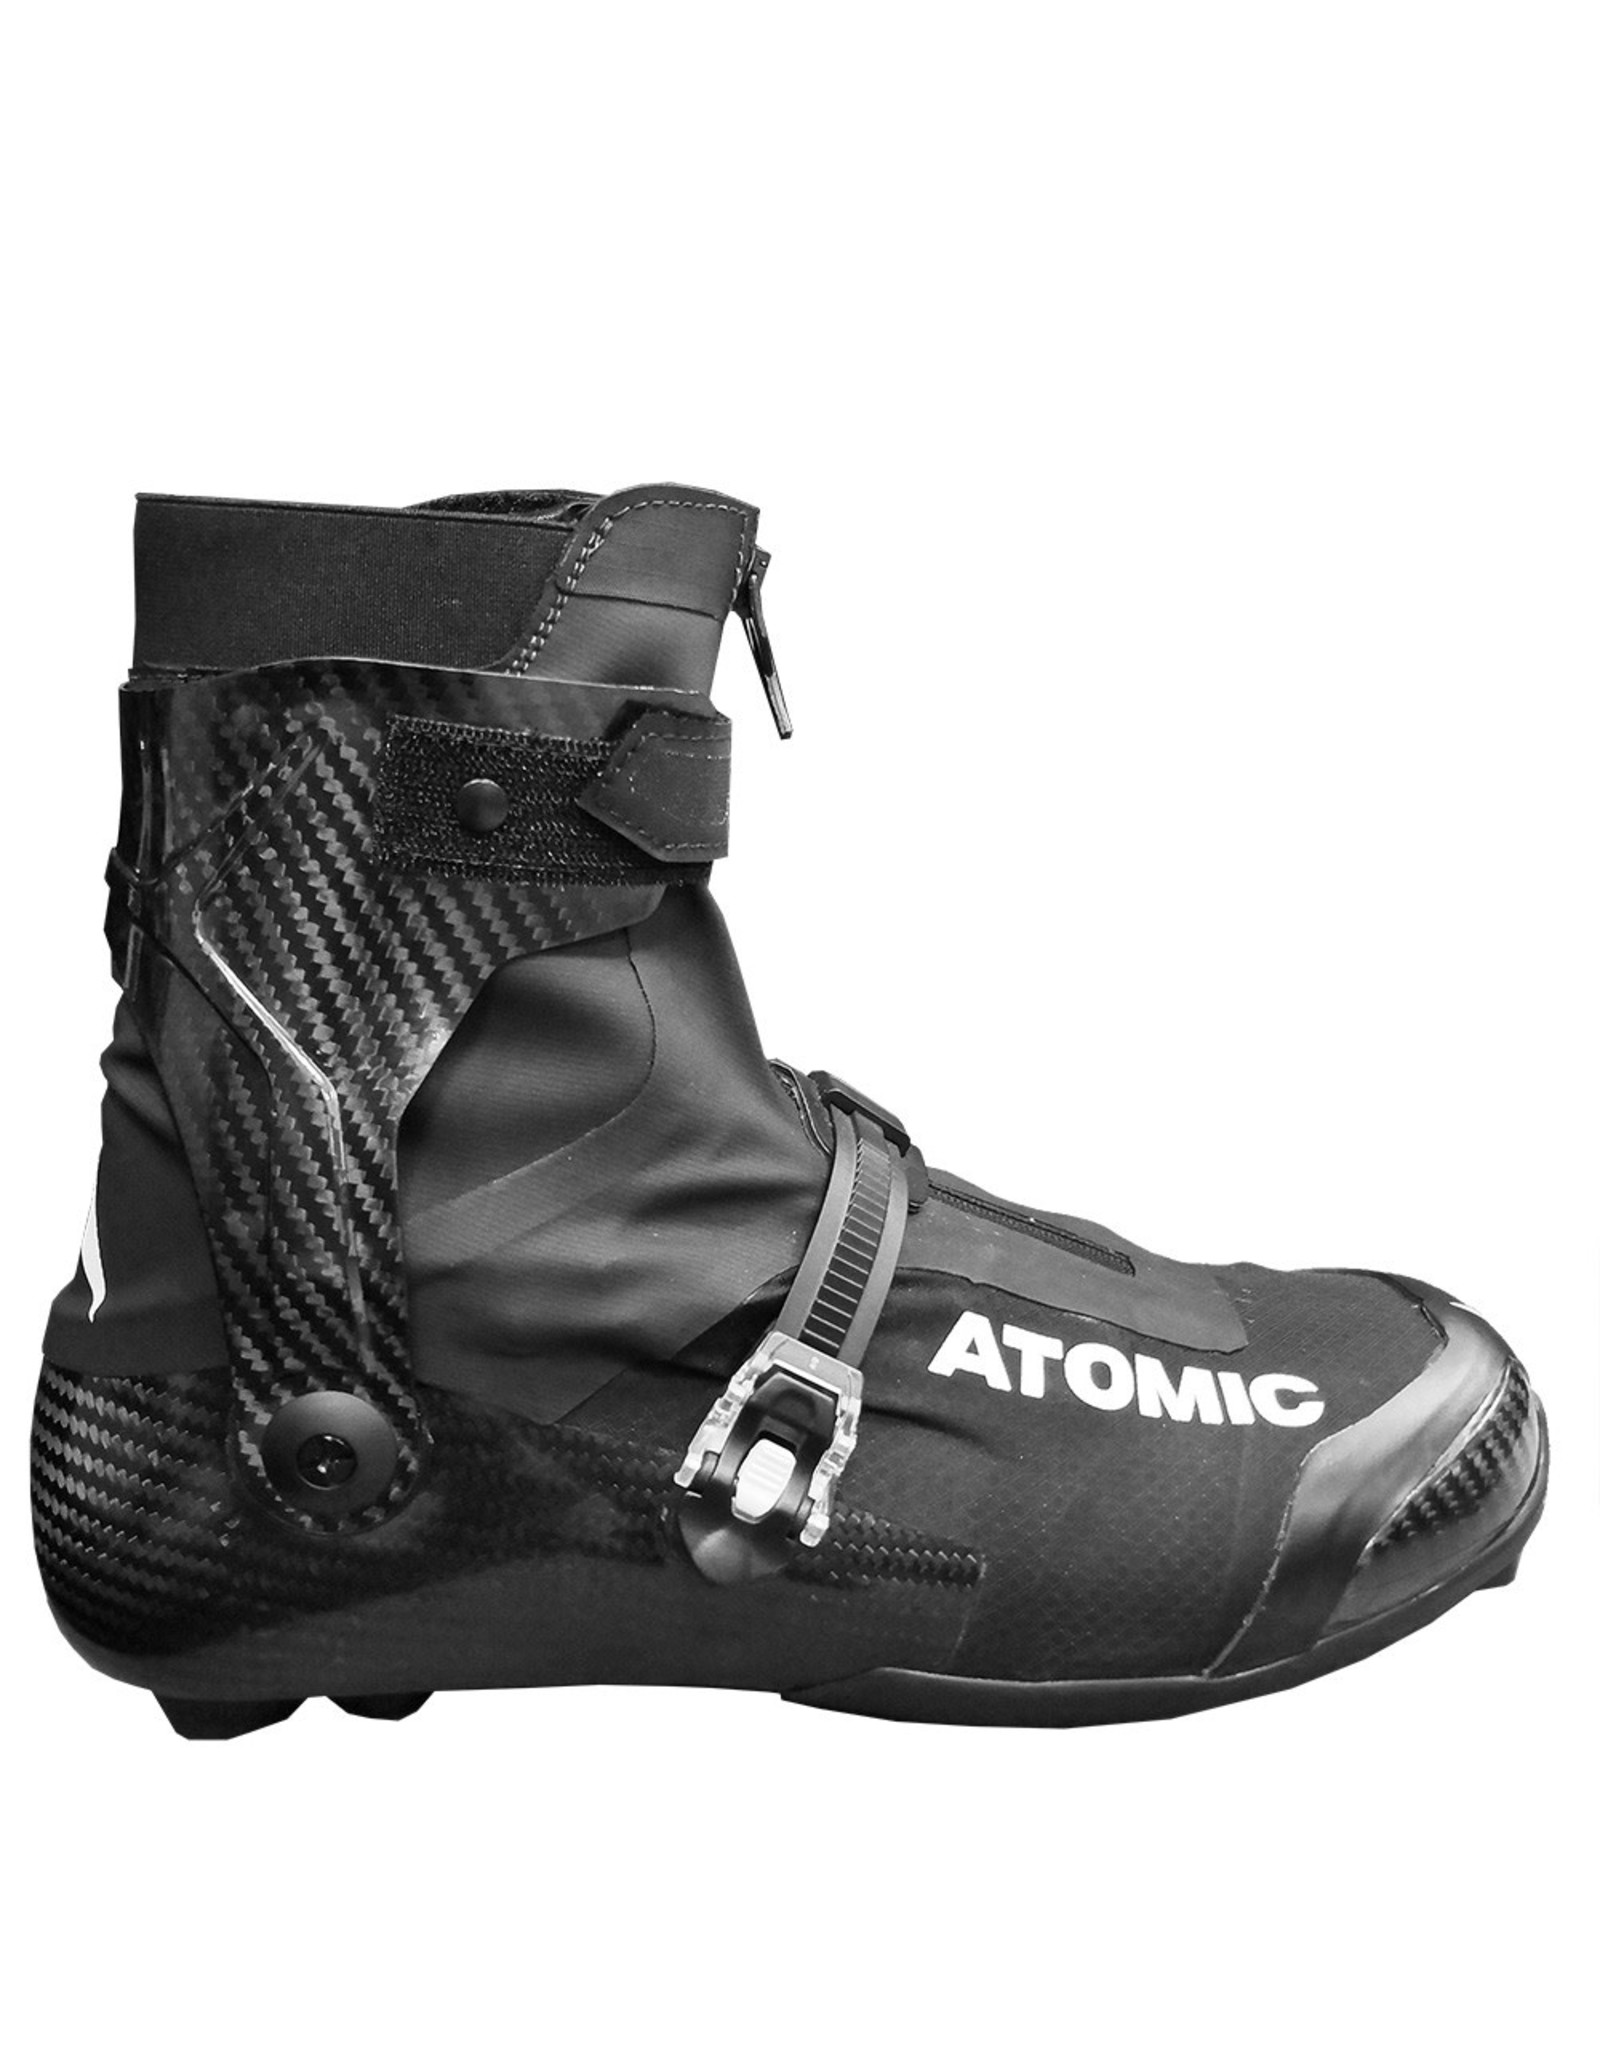 Atomic Atomic Redster Carbon Skate Racer Boot